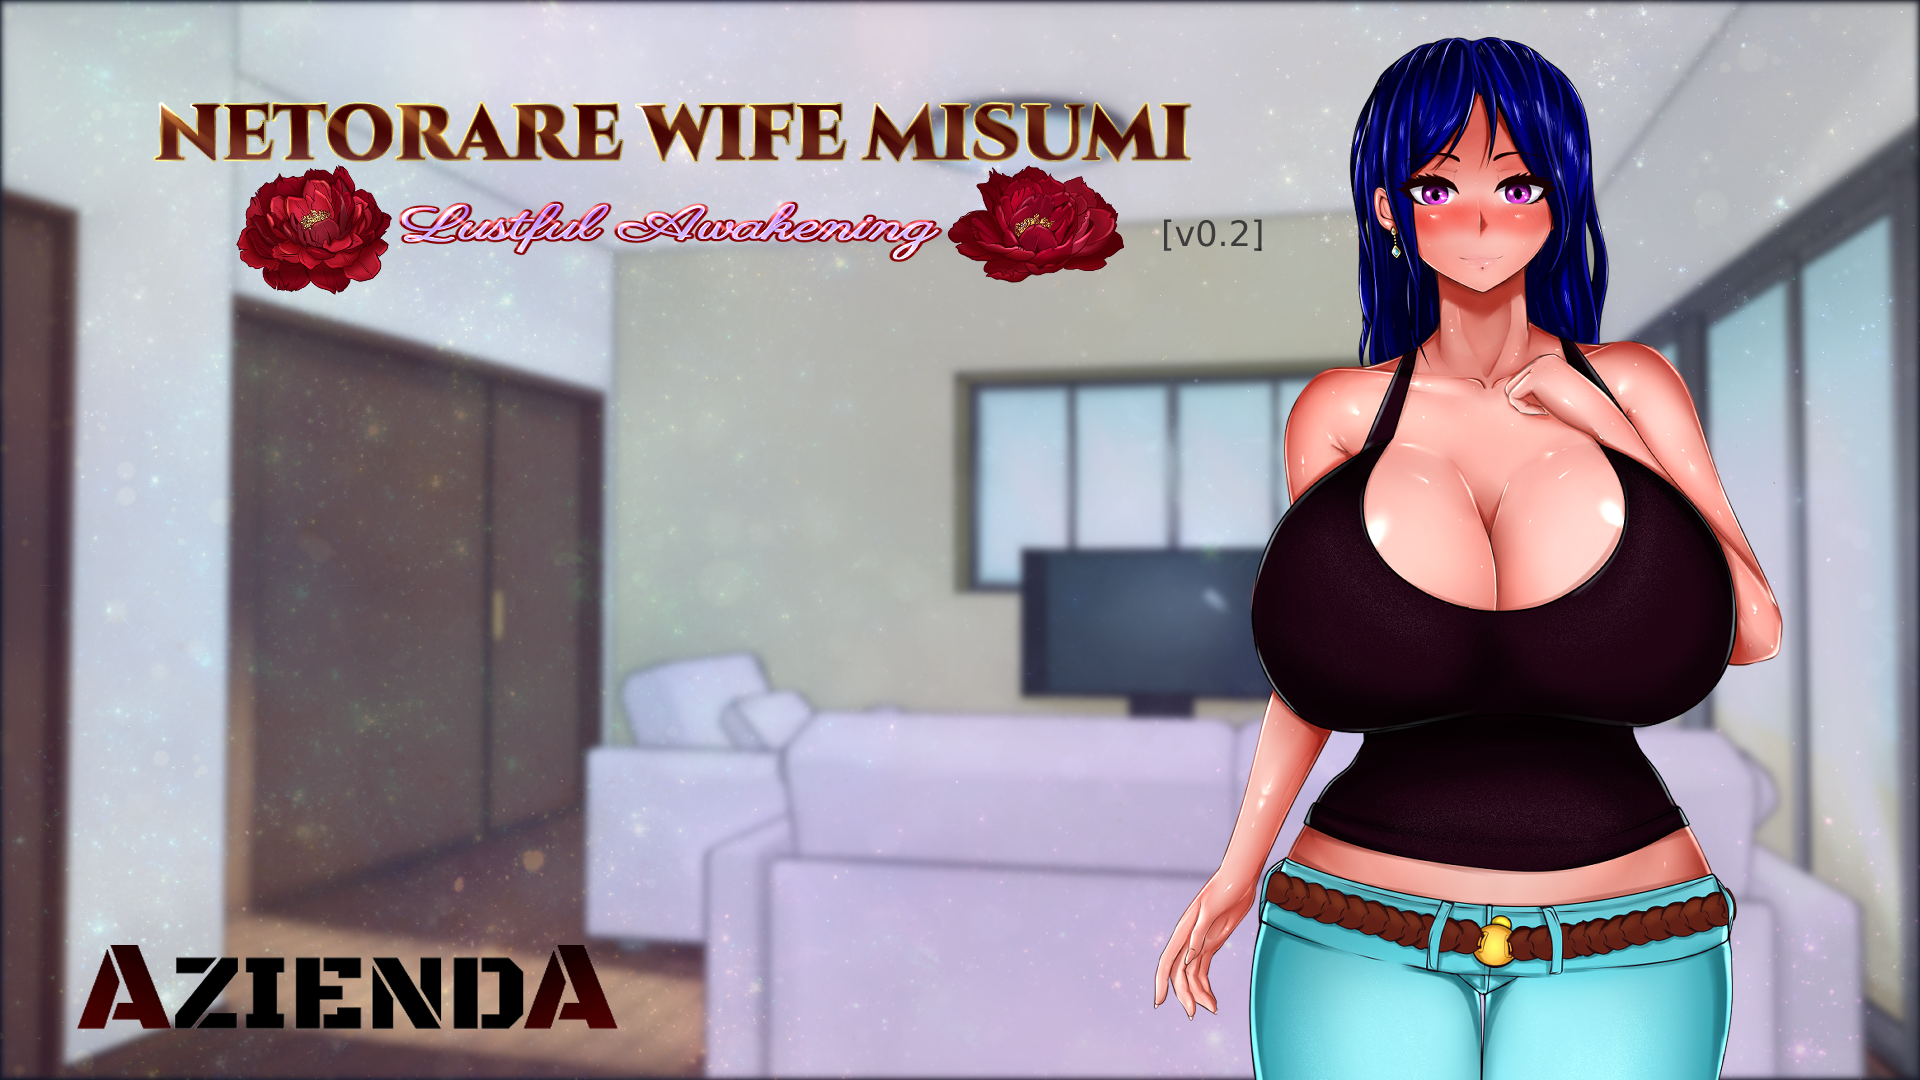 Netorare Wife Misumi - Lustful Awakening v0.2 - free game download, reviews, mega photo